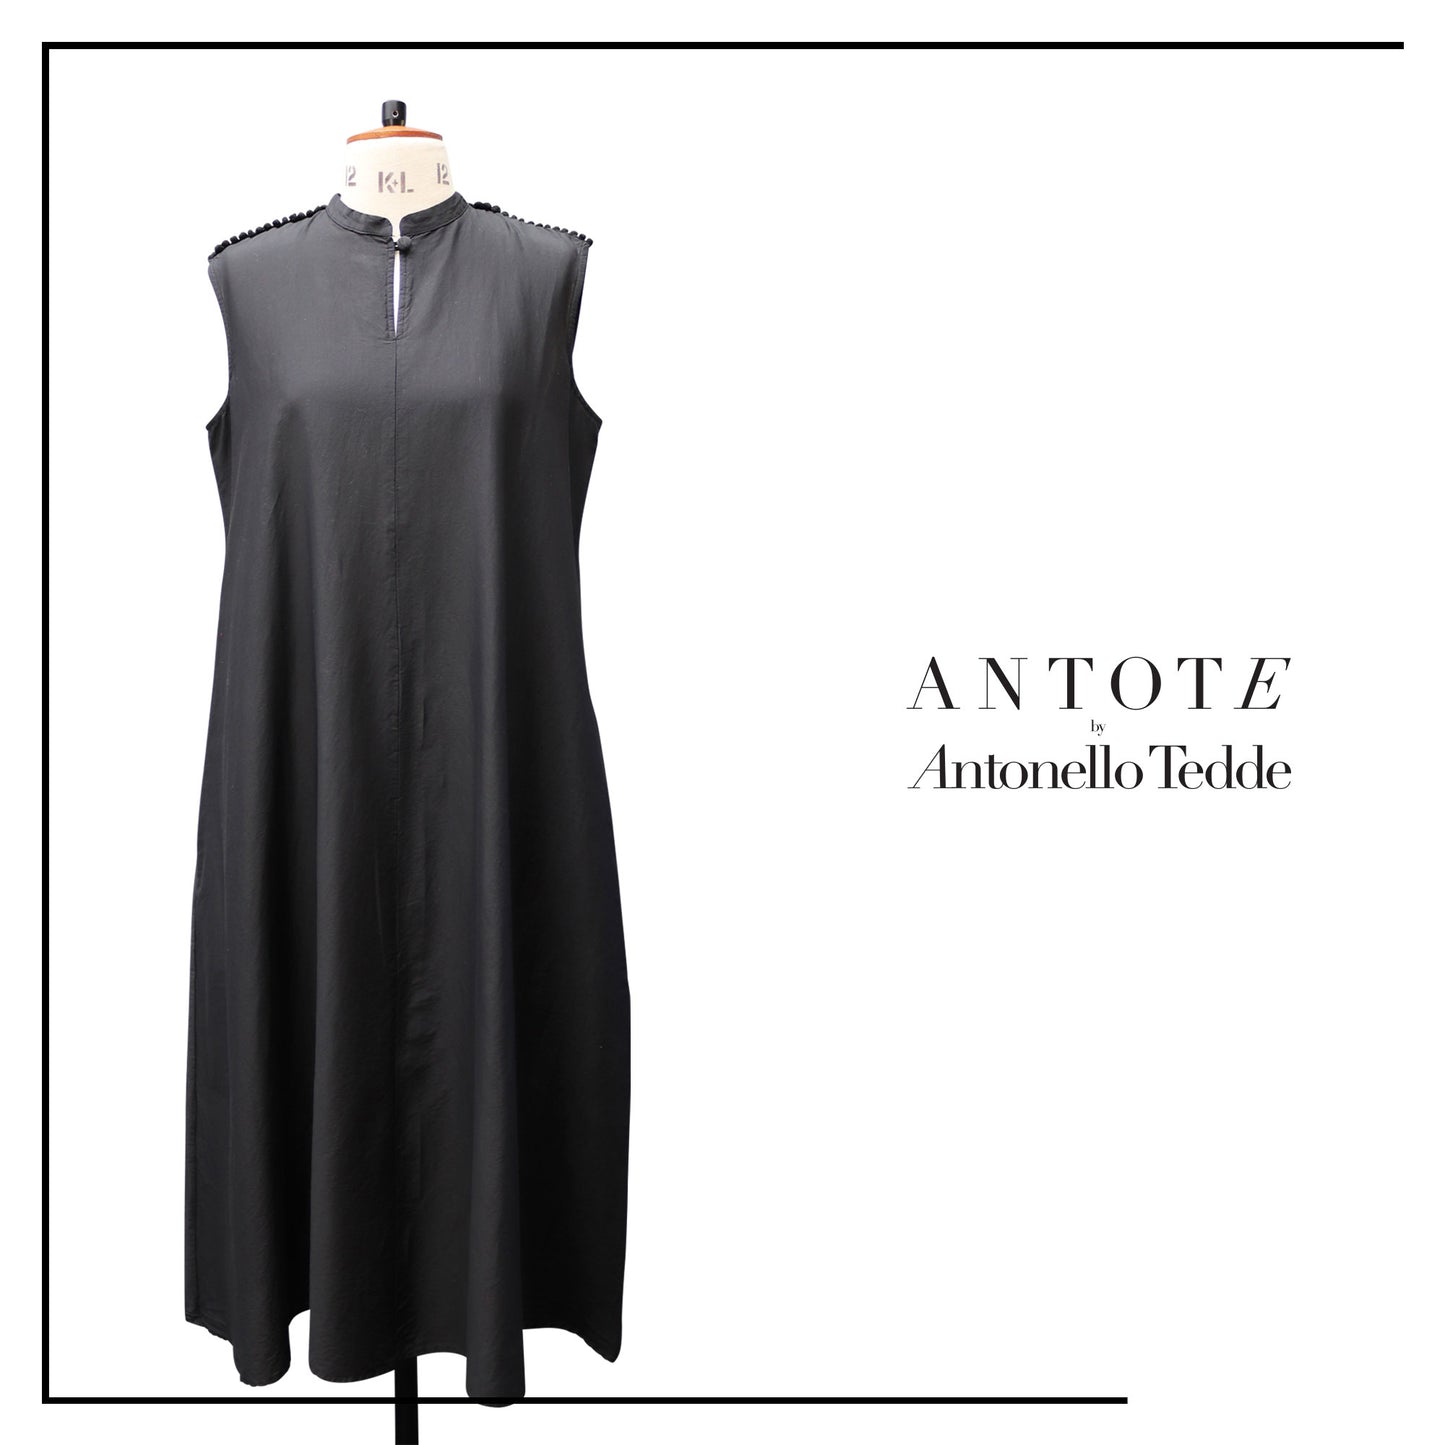 ANTOTE_ARDU  Dress